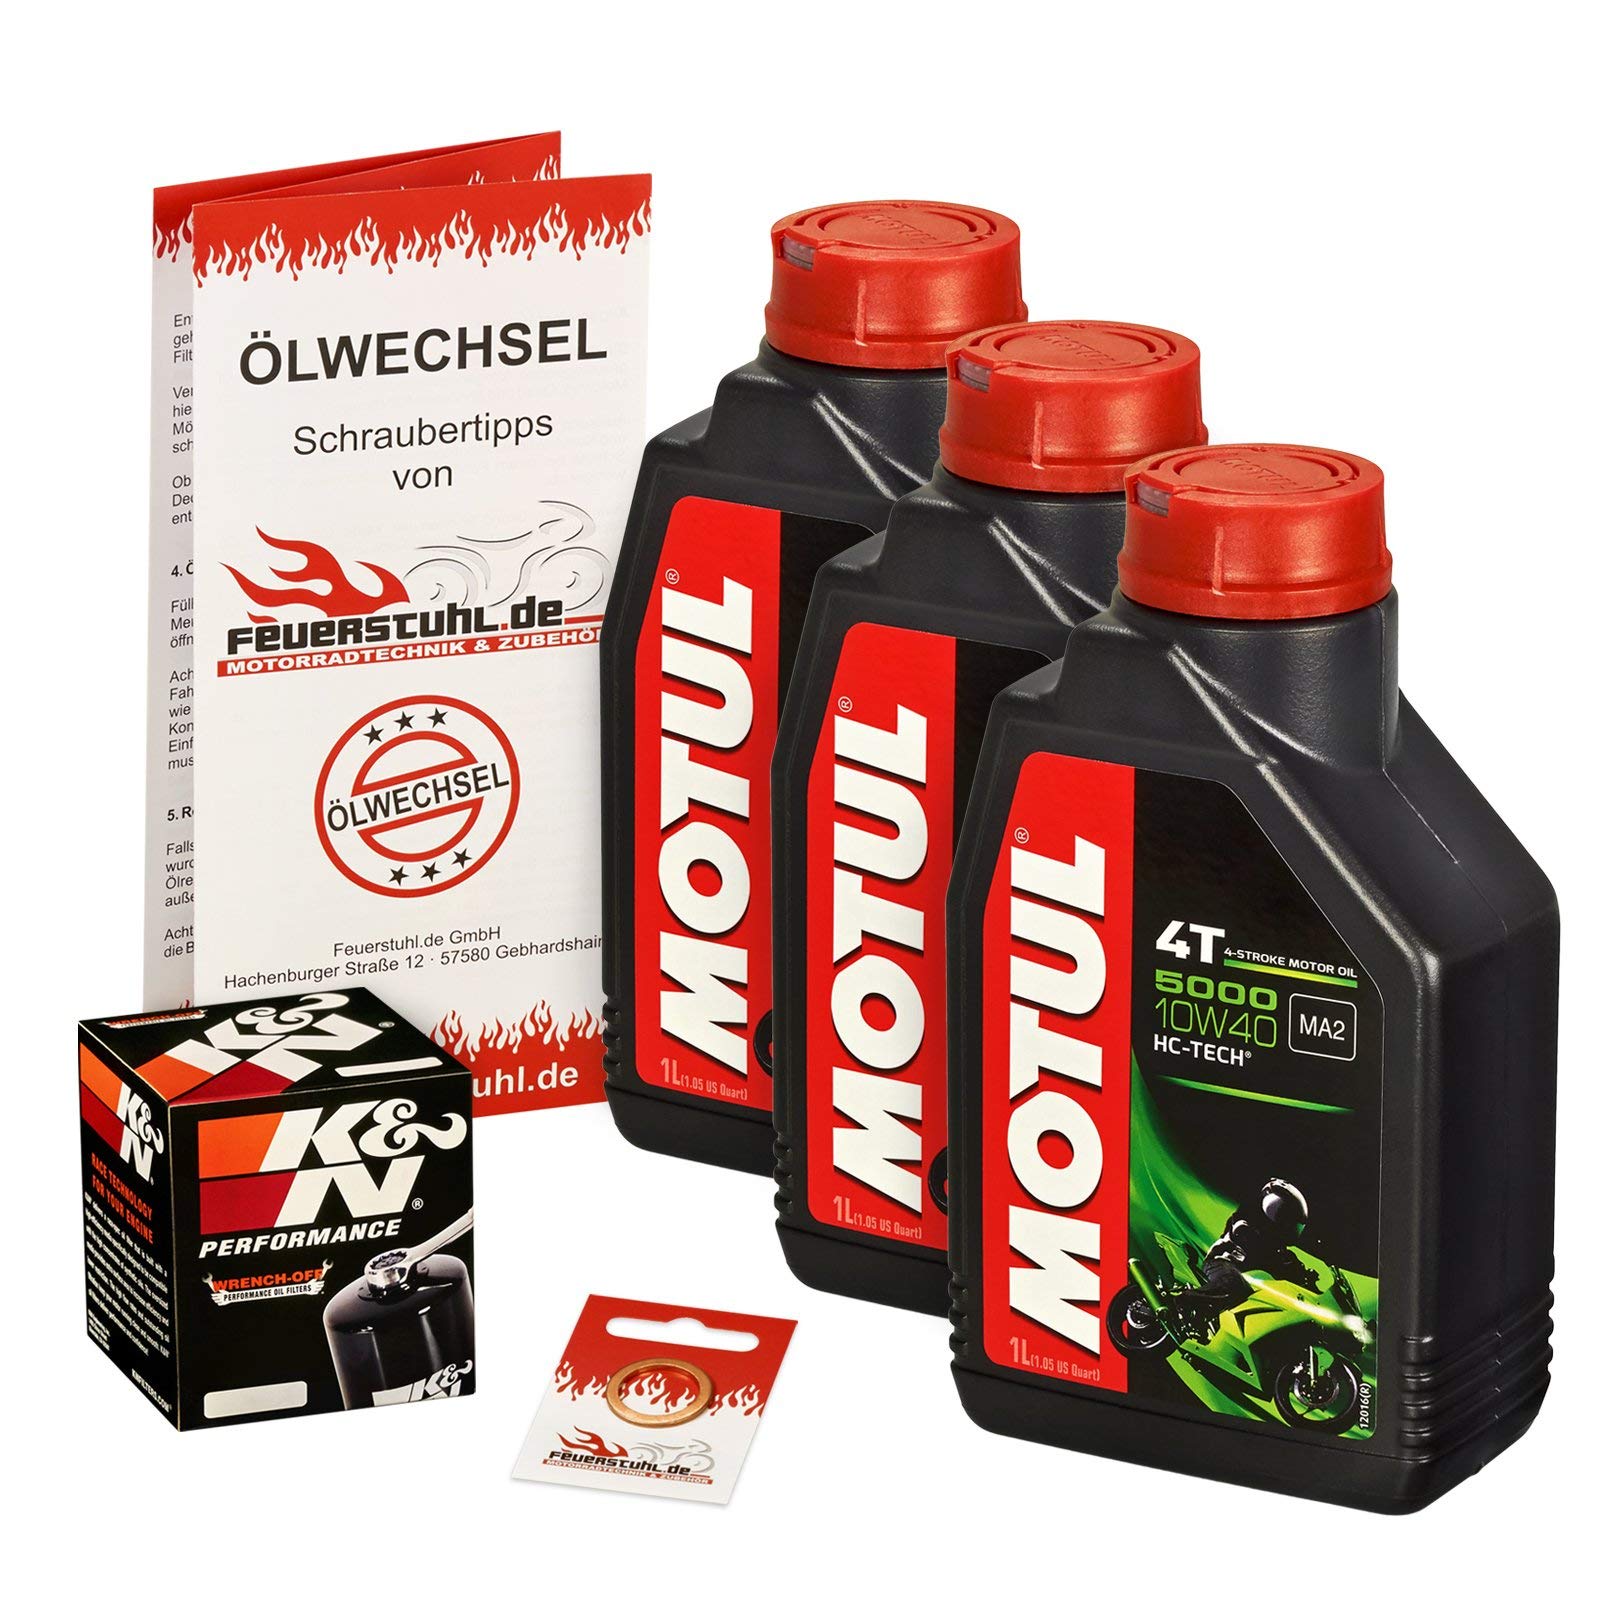 Motul 10W-40 Öl + K&N Ölfilter für Honda NTV 650 Revere, 88-97, RC33 - Ölwechselset inkl. Motoröl, Filter, Dichtring von Motul